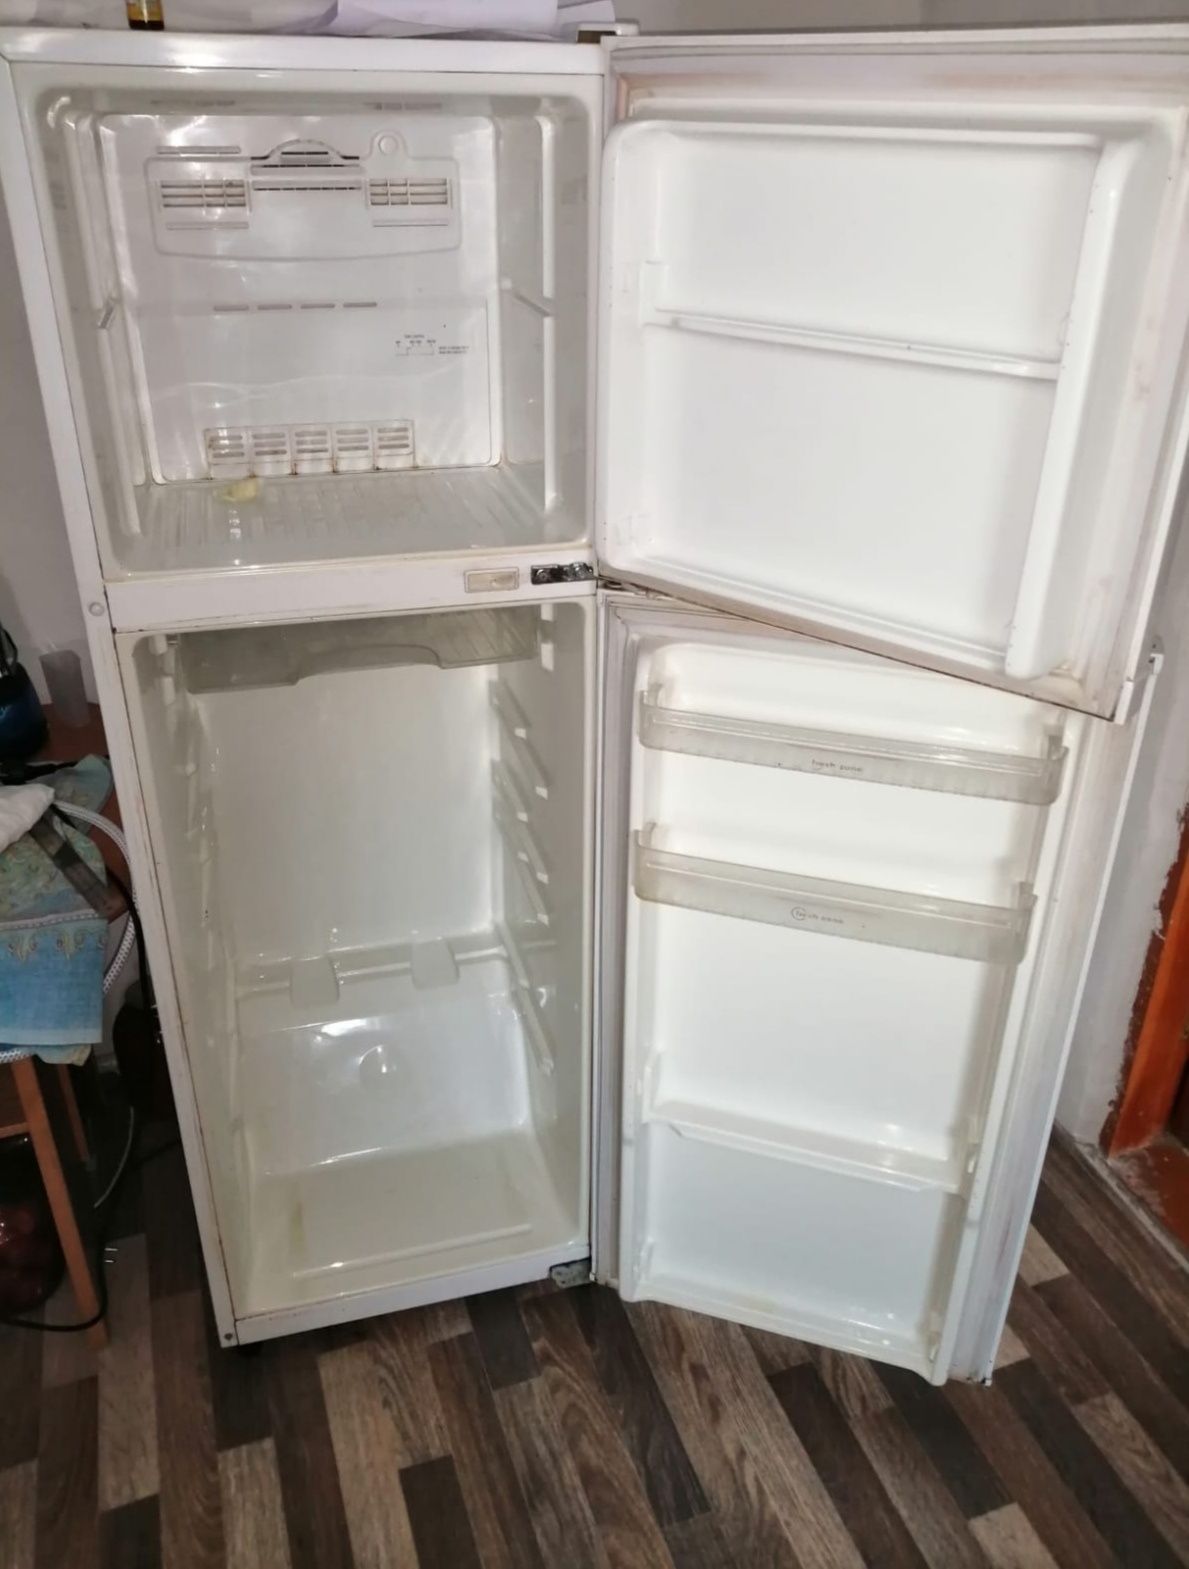 Продам холодильник Dаewoo